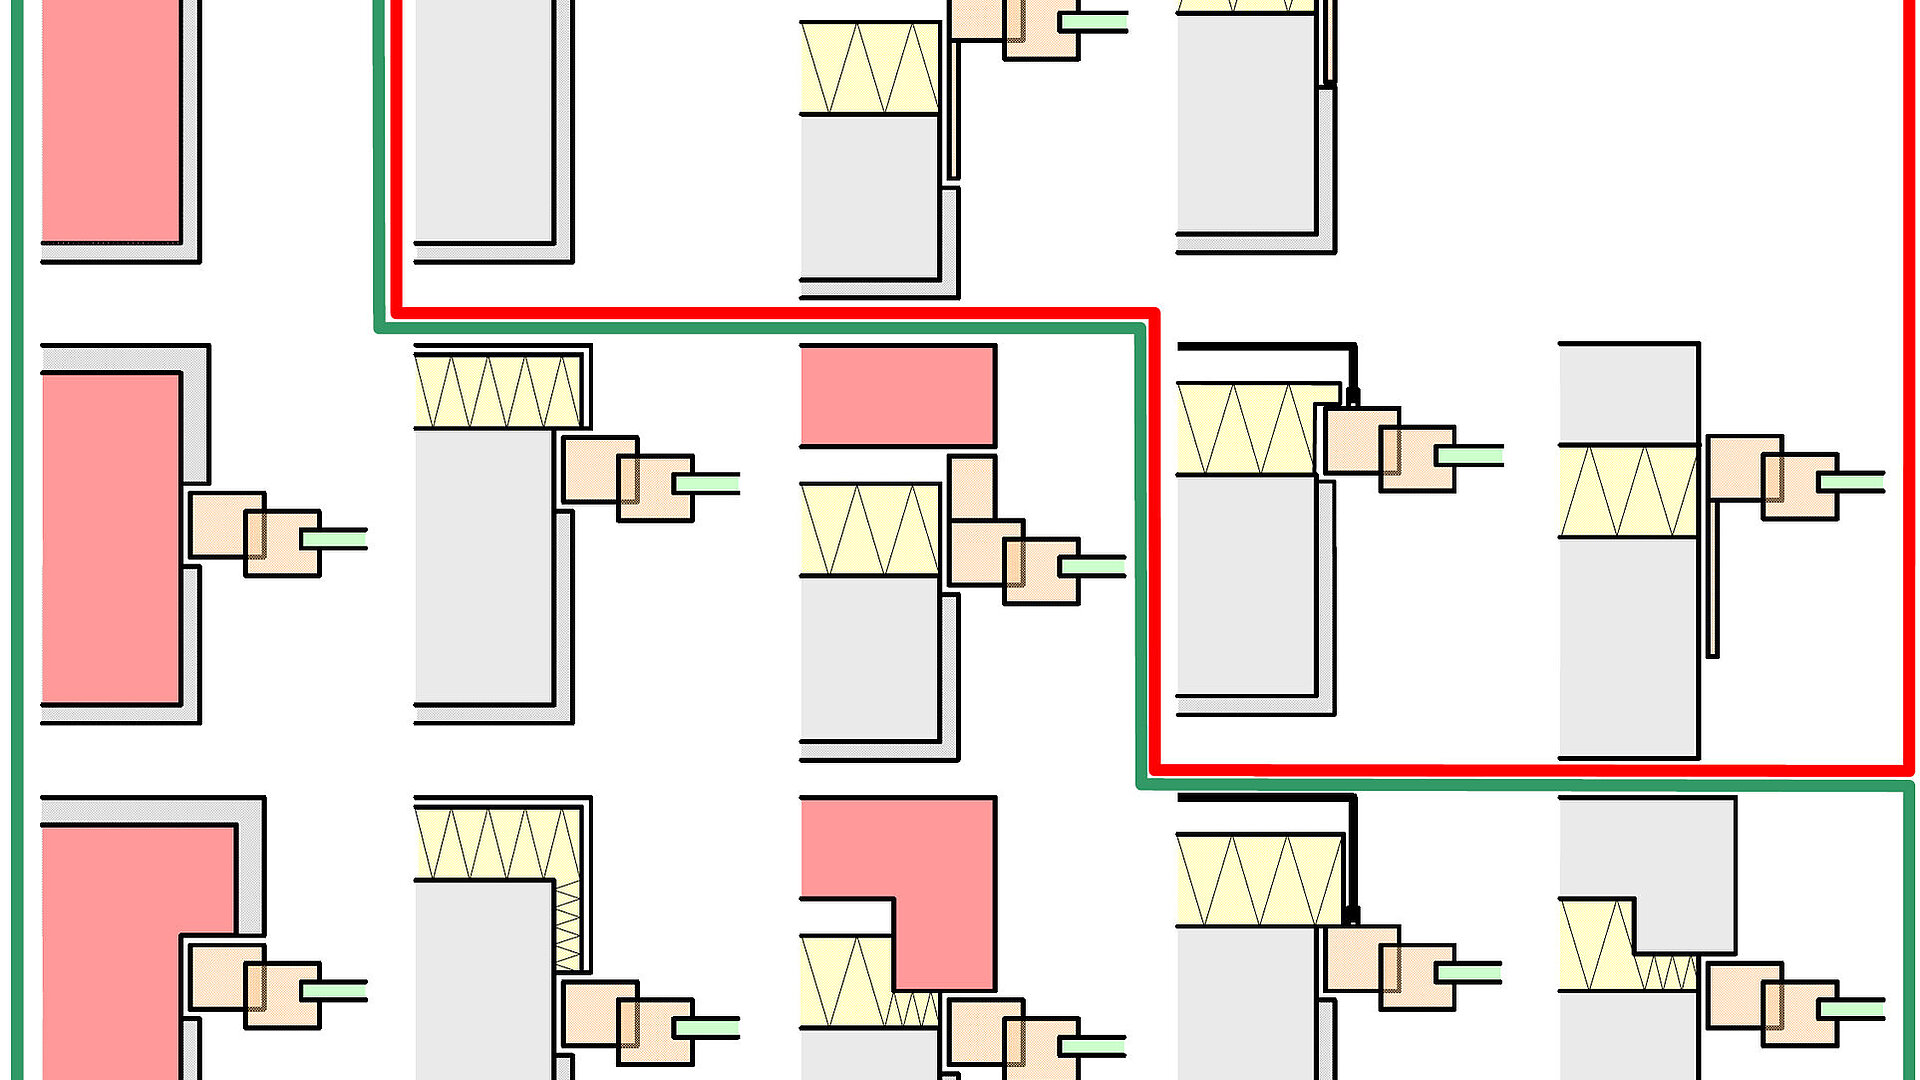 Die Grafik zeigt 14 verschiedene Fenstereinbausituationen im Bezug auf deren Schallfunktion. Fünf davon sind rot umrahmt, da sie im gemäß DIN 4109-2 schalltechnisch kritisch sind.